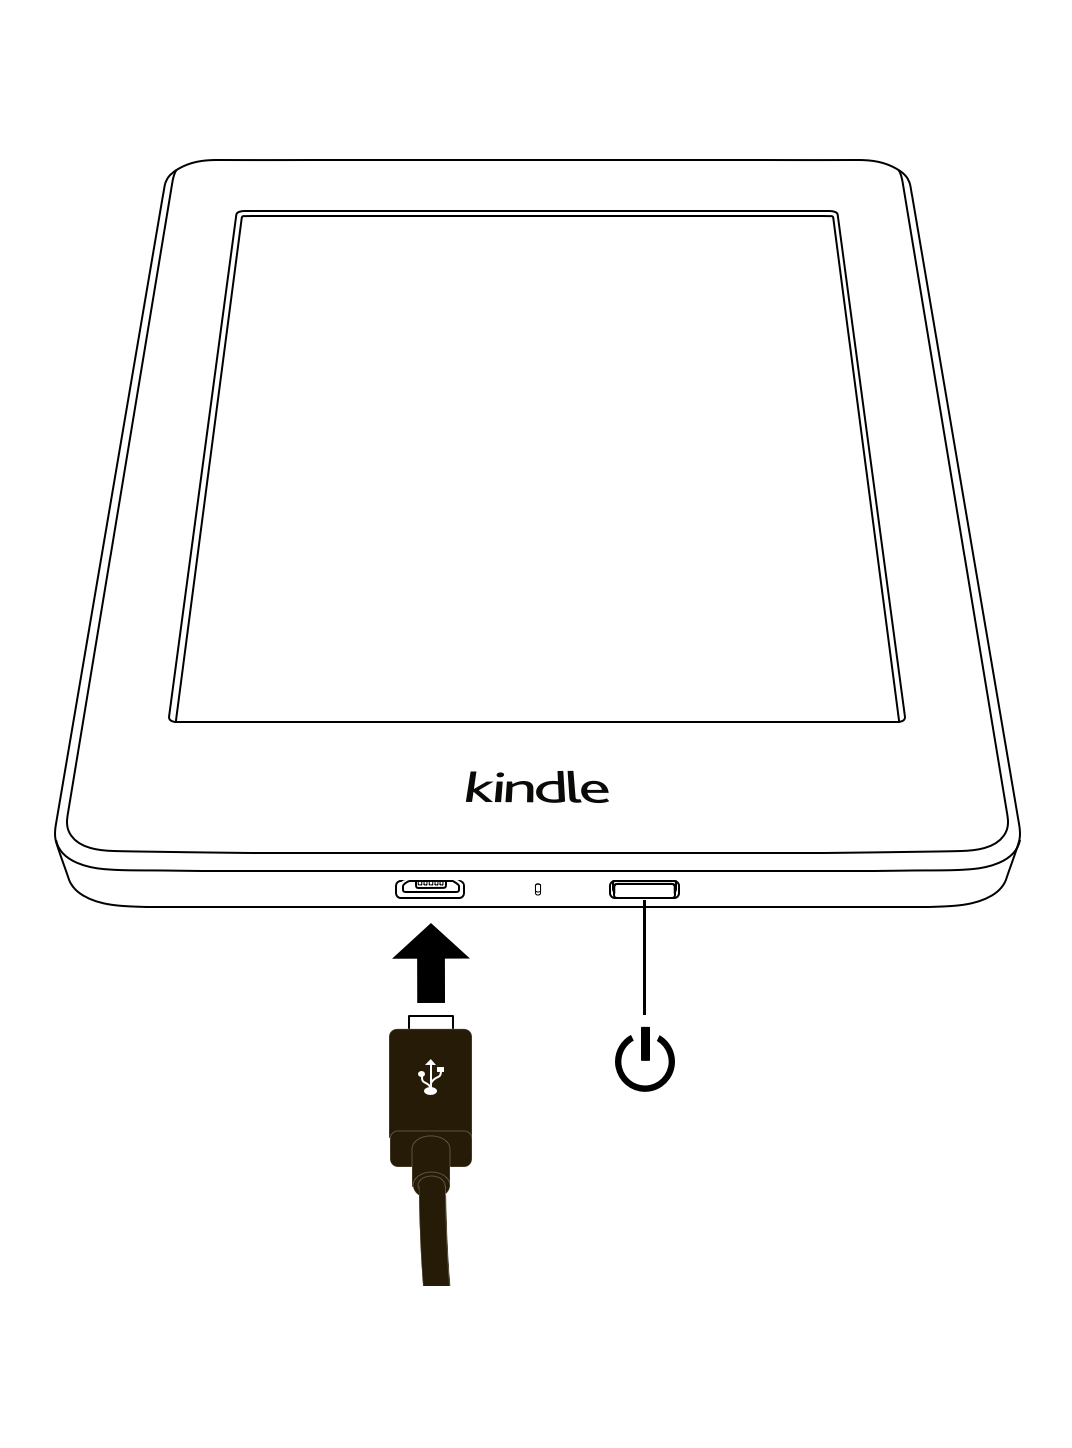 Verifique se o Kindle está conectado à rede Wi-Fi correta.
Caso contrário, selecione a rede correta e insira a senha, se necessário.